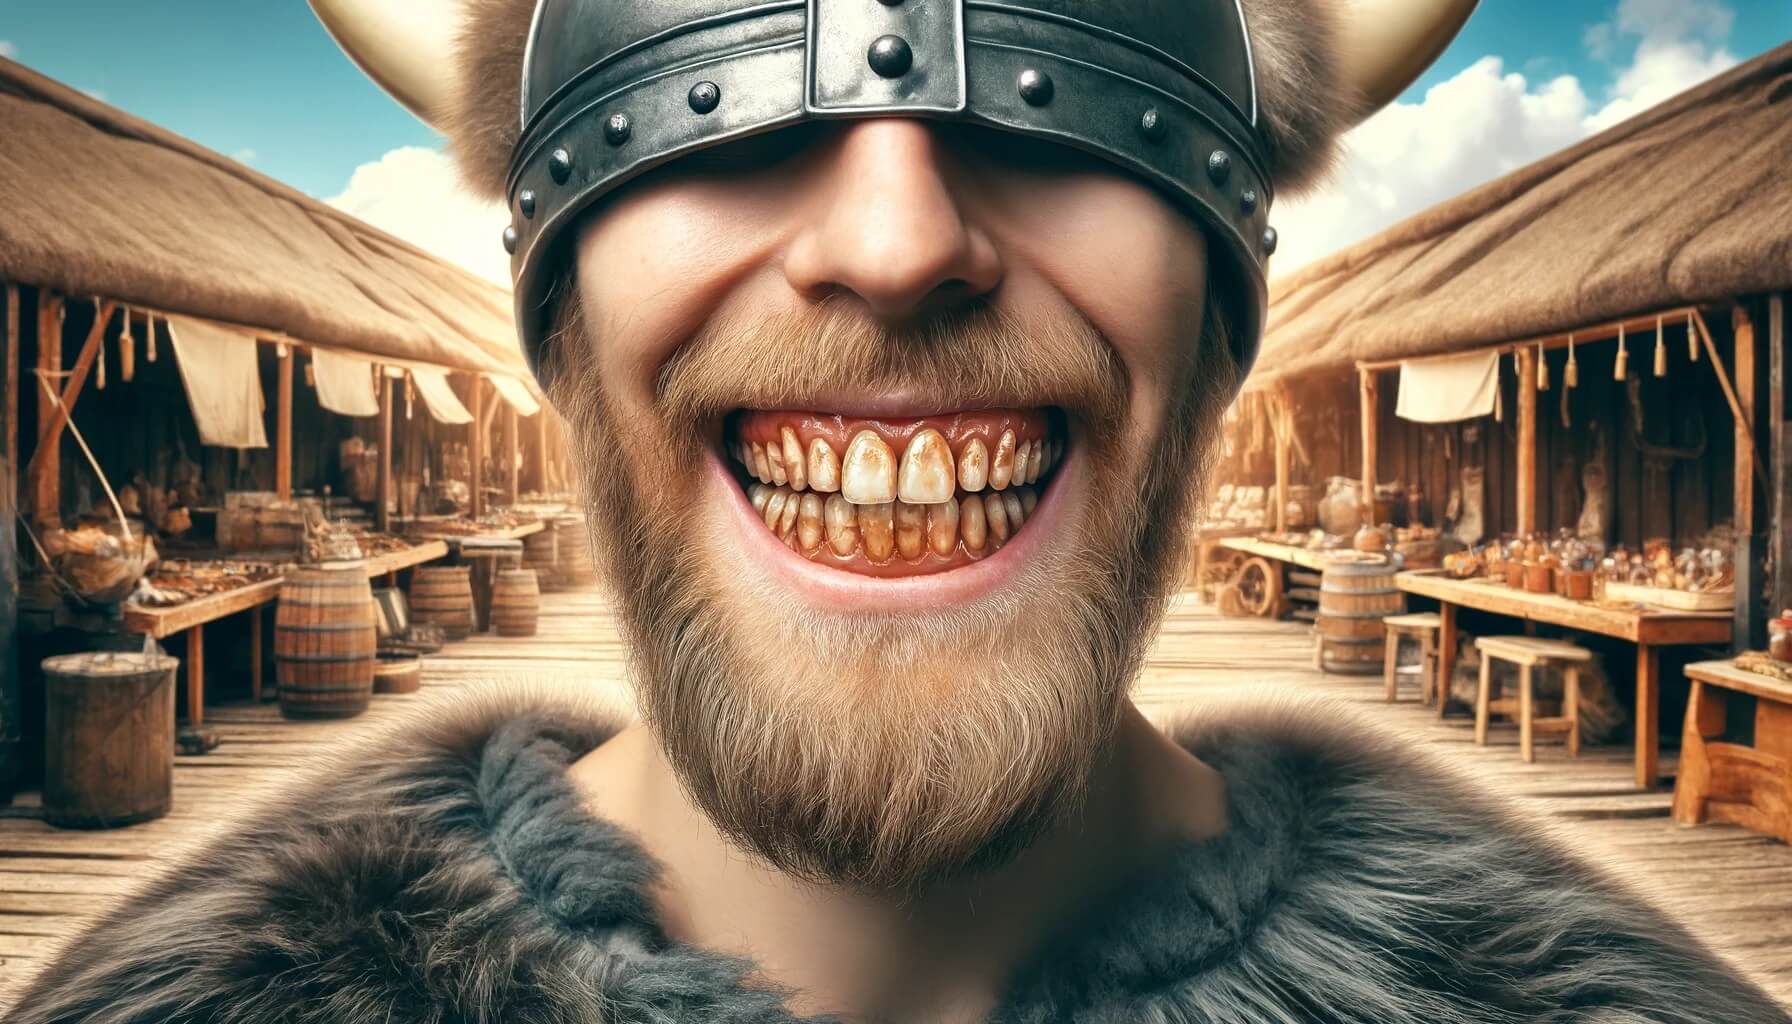 Викинги подчеркивали свой статус отметинами на зубах и формой черепа. Торговцев во времена викингов можно было узнать по их зубам. Фото.